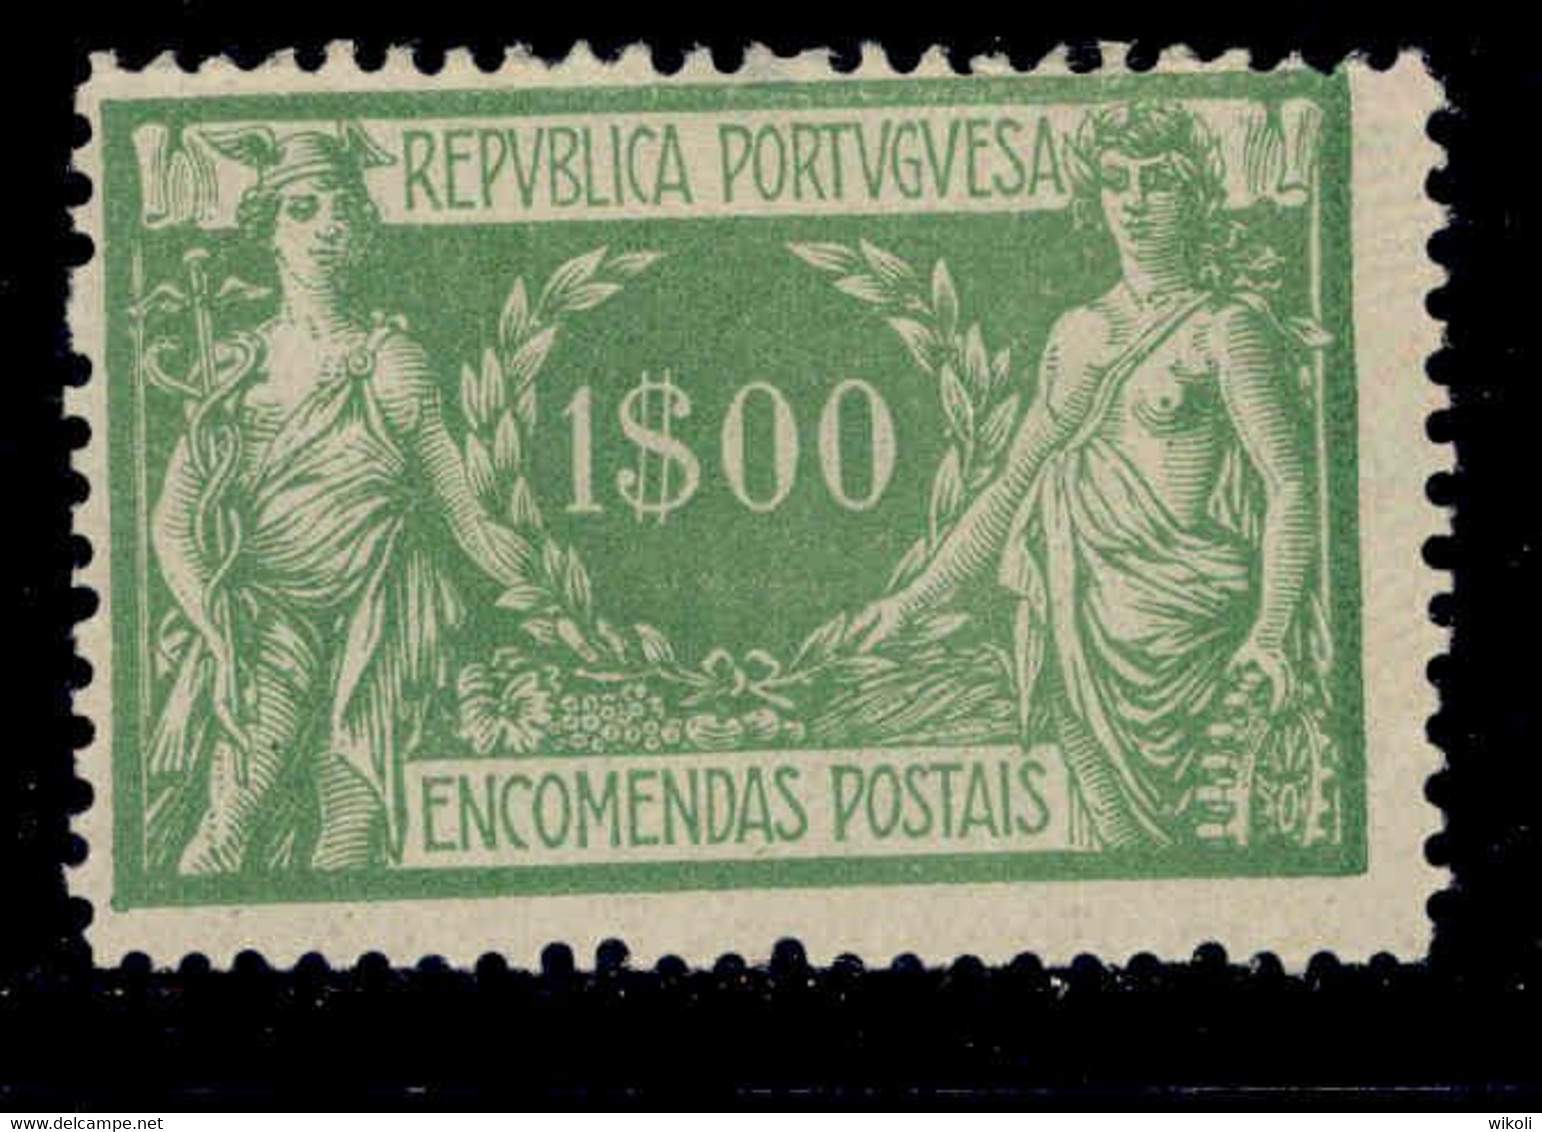 ! ! Portugal - 1920 Parcel Post 1$00 - Af. EP 12 - No Gum - Unused Stamps